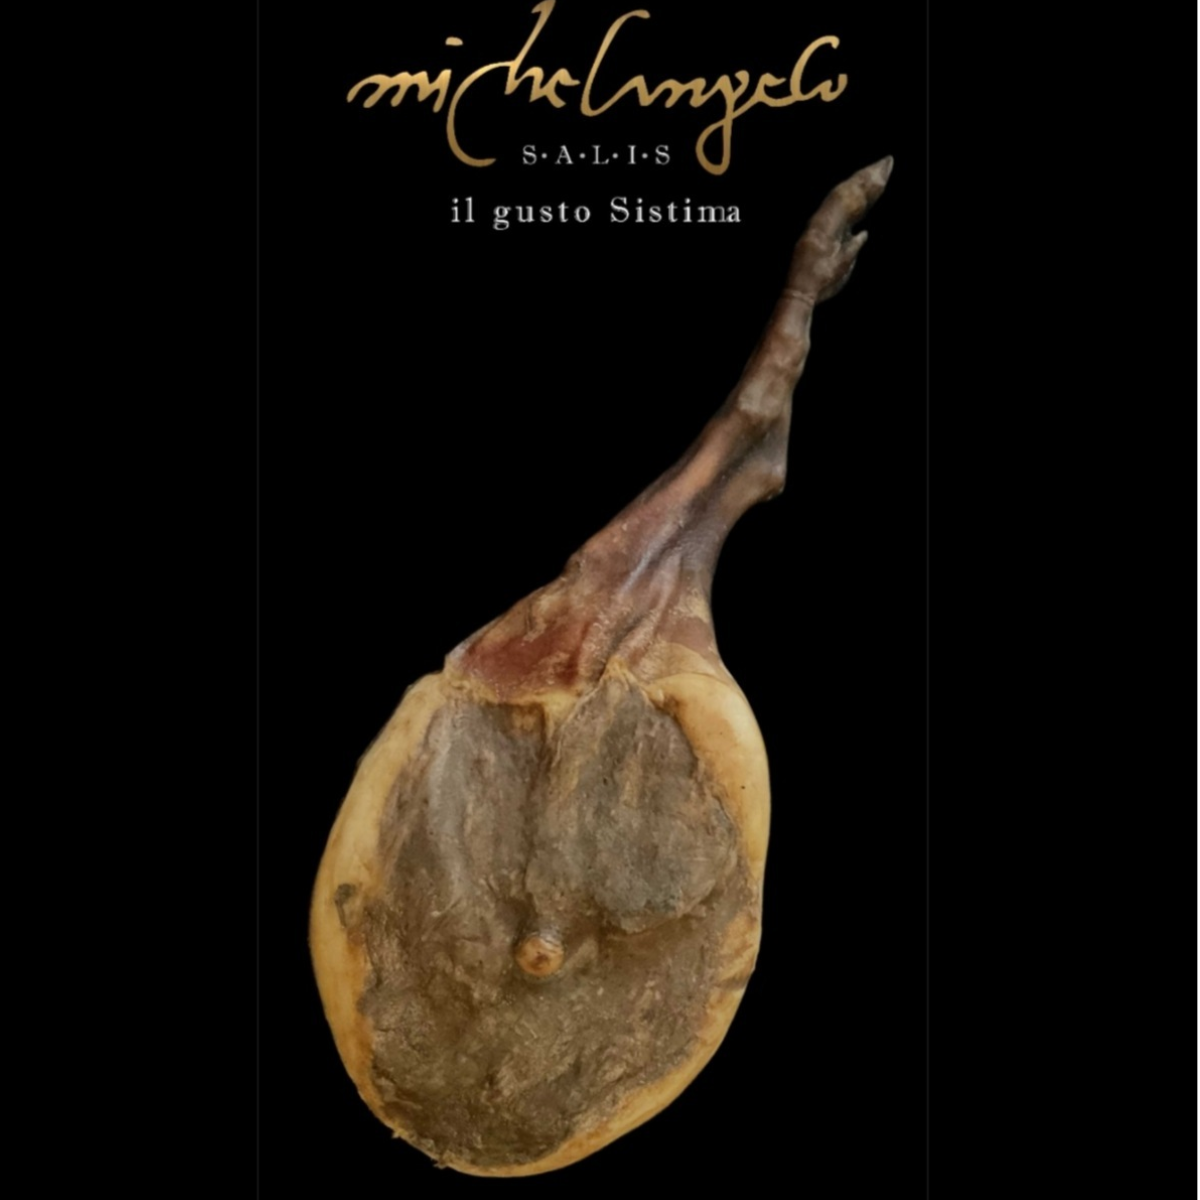 Prosciutto di Cinghiale dell'Asinara Michelangelo Salis